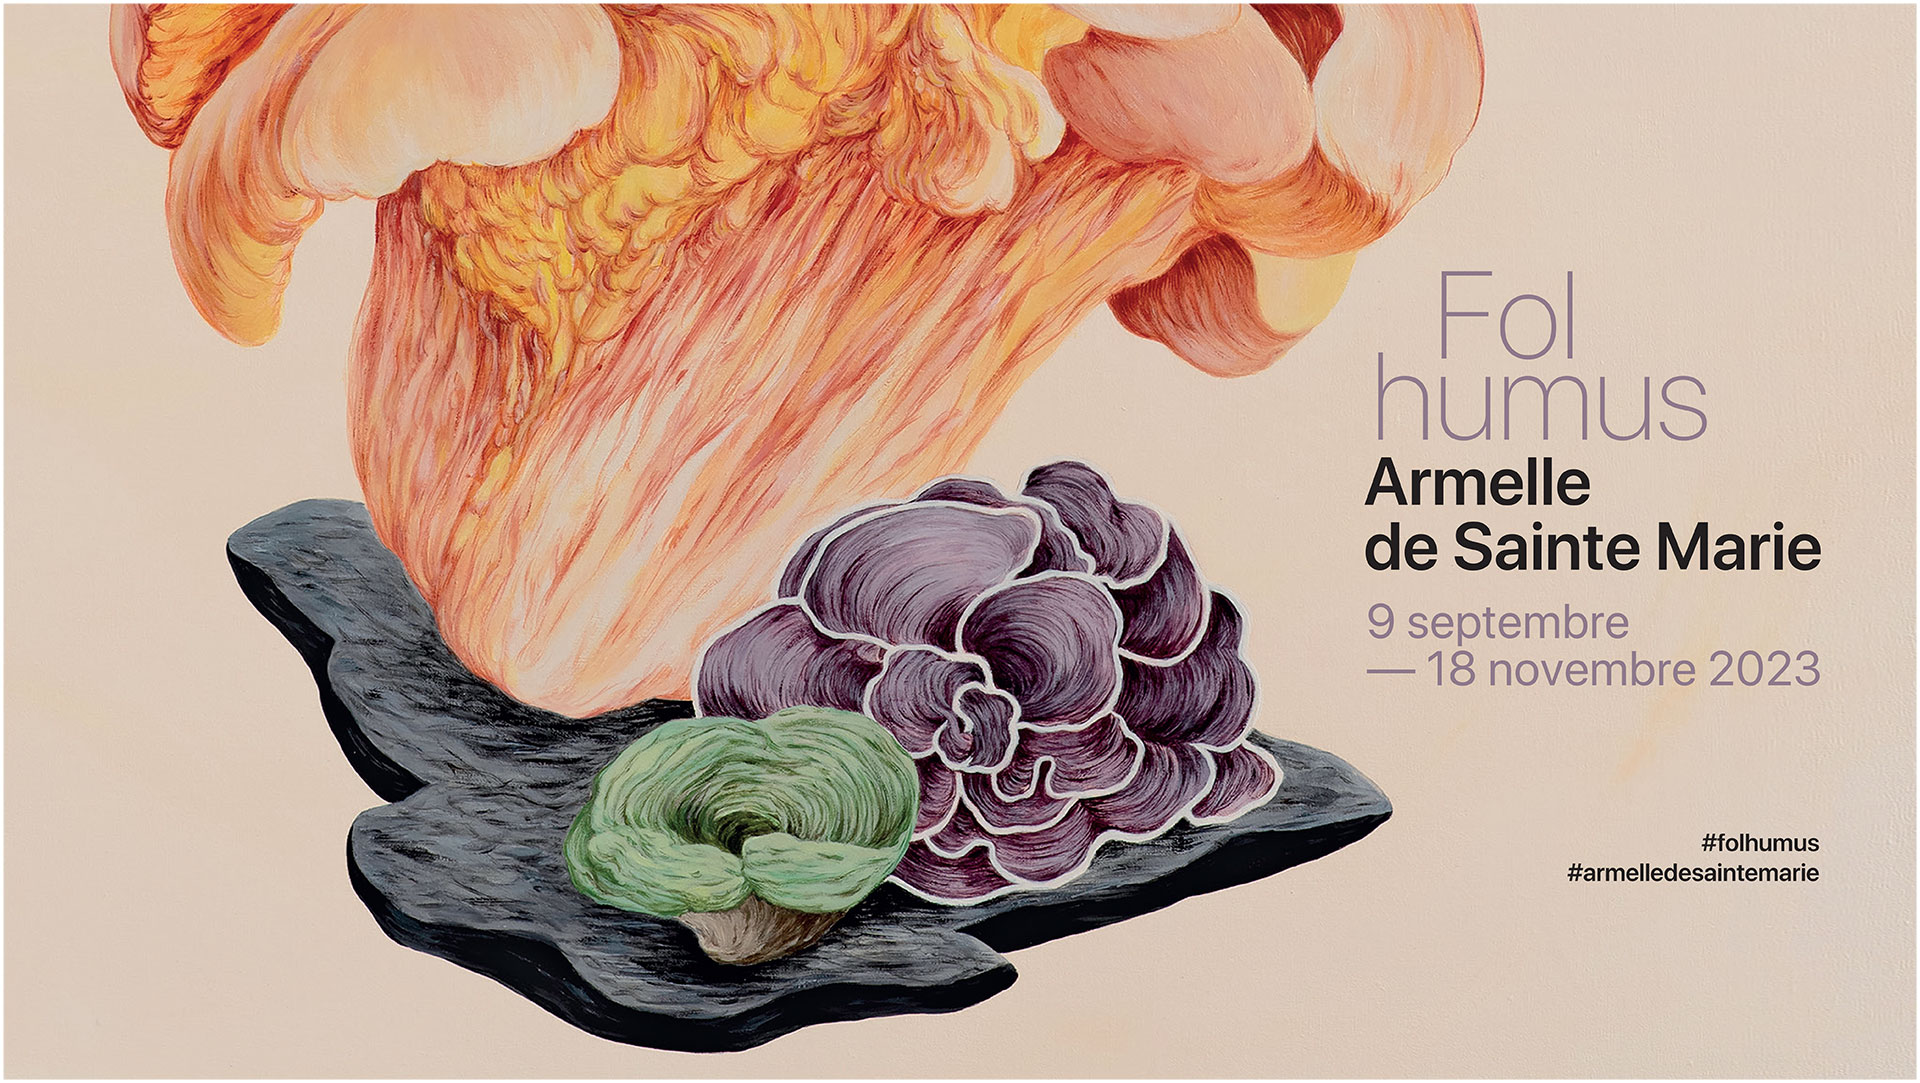 Armelle de Sainte Marie - Fol humus - du 9 septembre au 18 novembre 2023